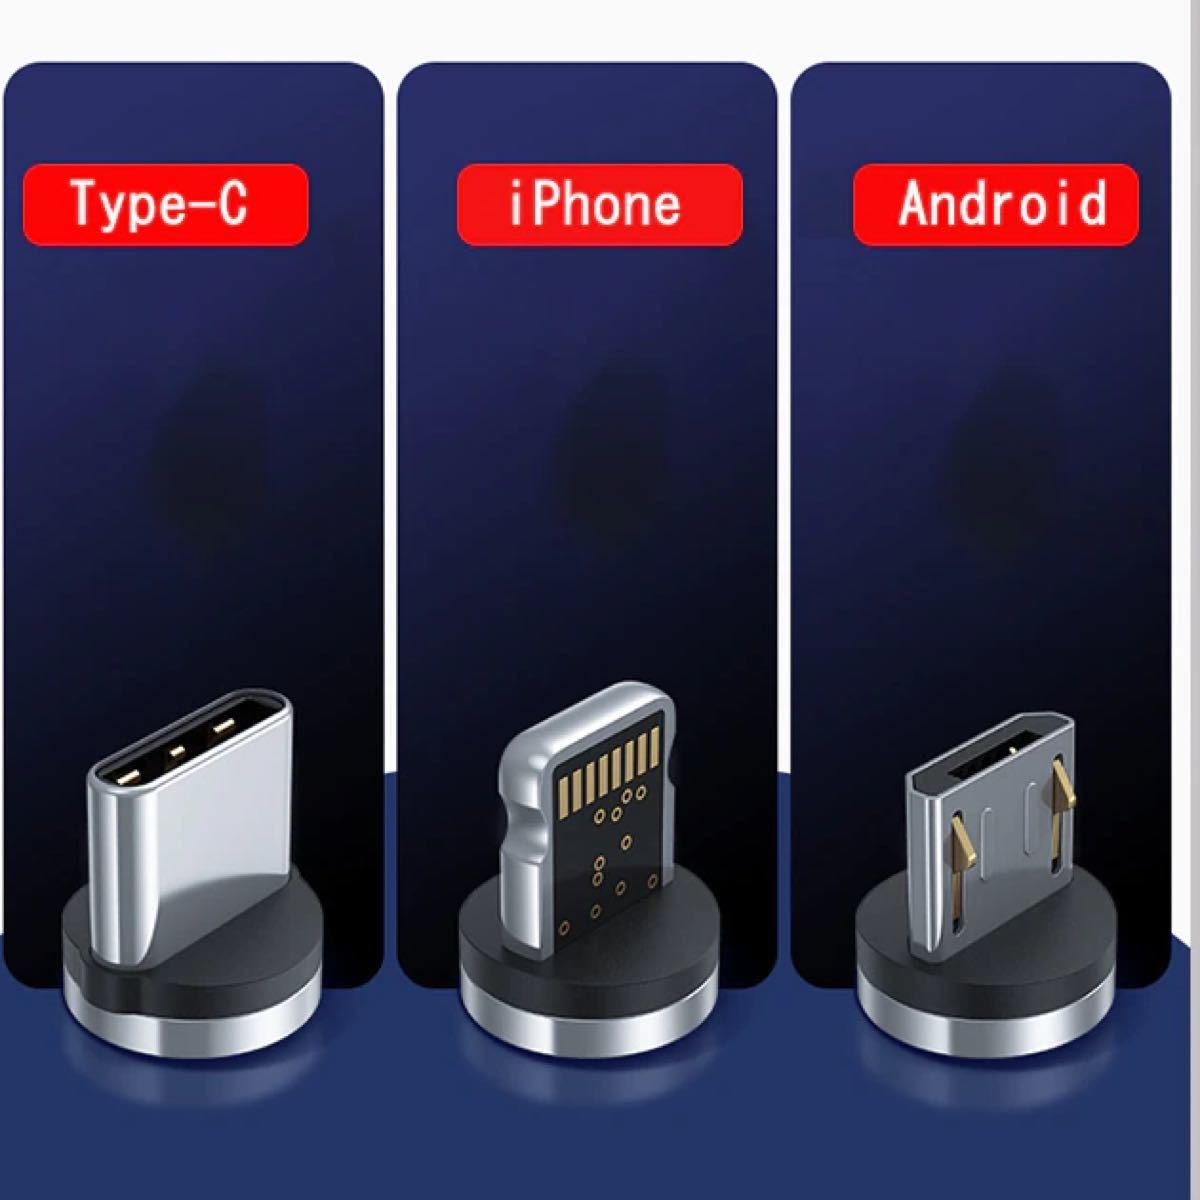 マグネット充電ケーブル 1M iPhone Android TYPE-C 急速充電 断線防止磁石式 ケーブル アイフォンケーブル